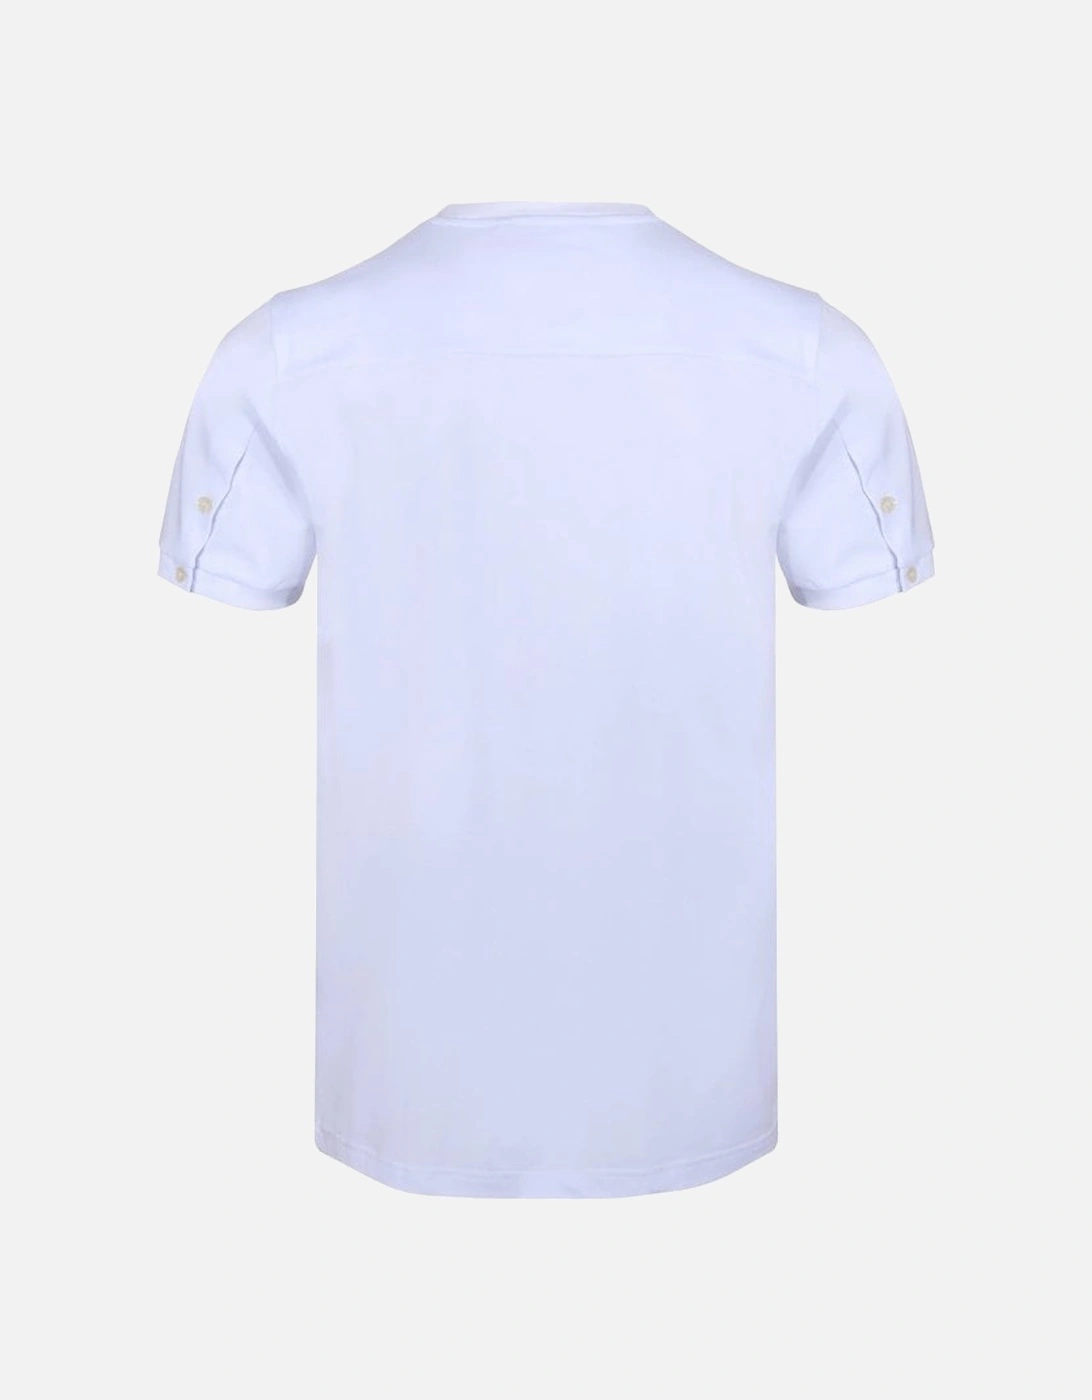 Luke Shanghai T-shirt White